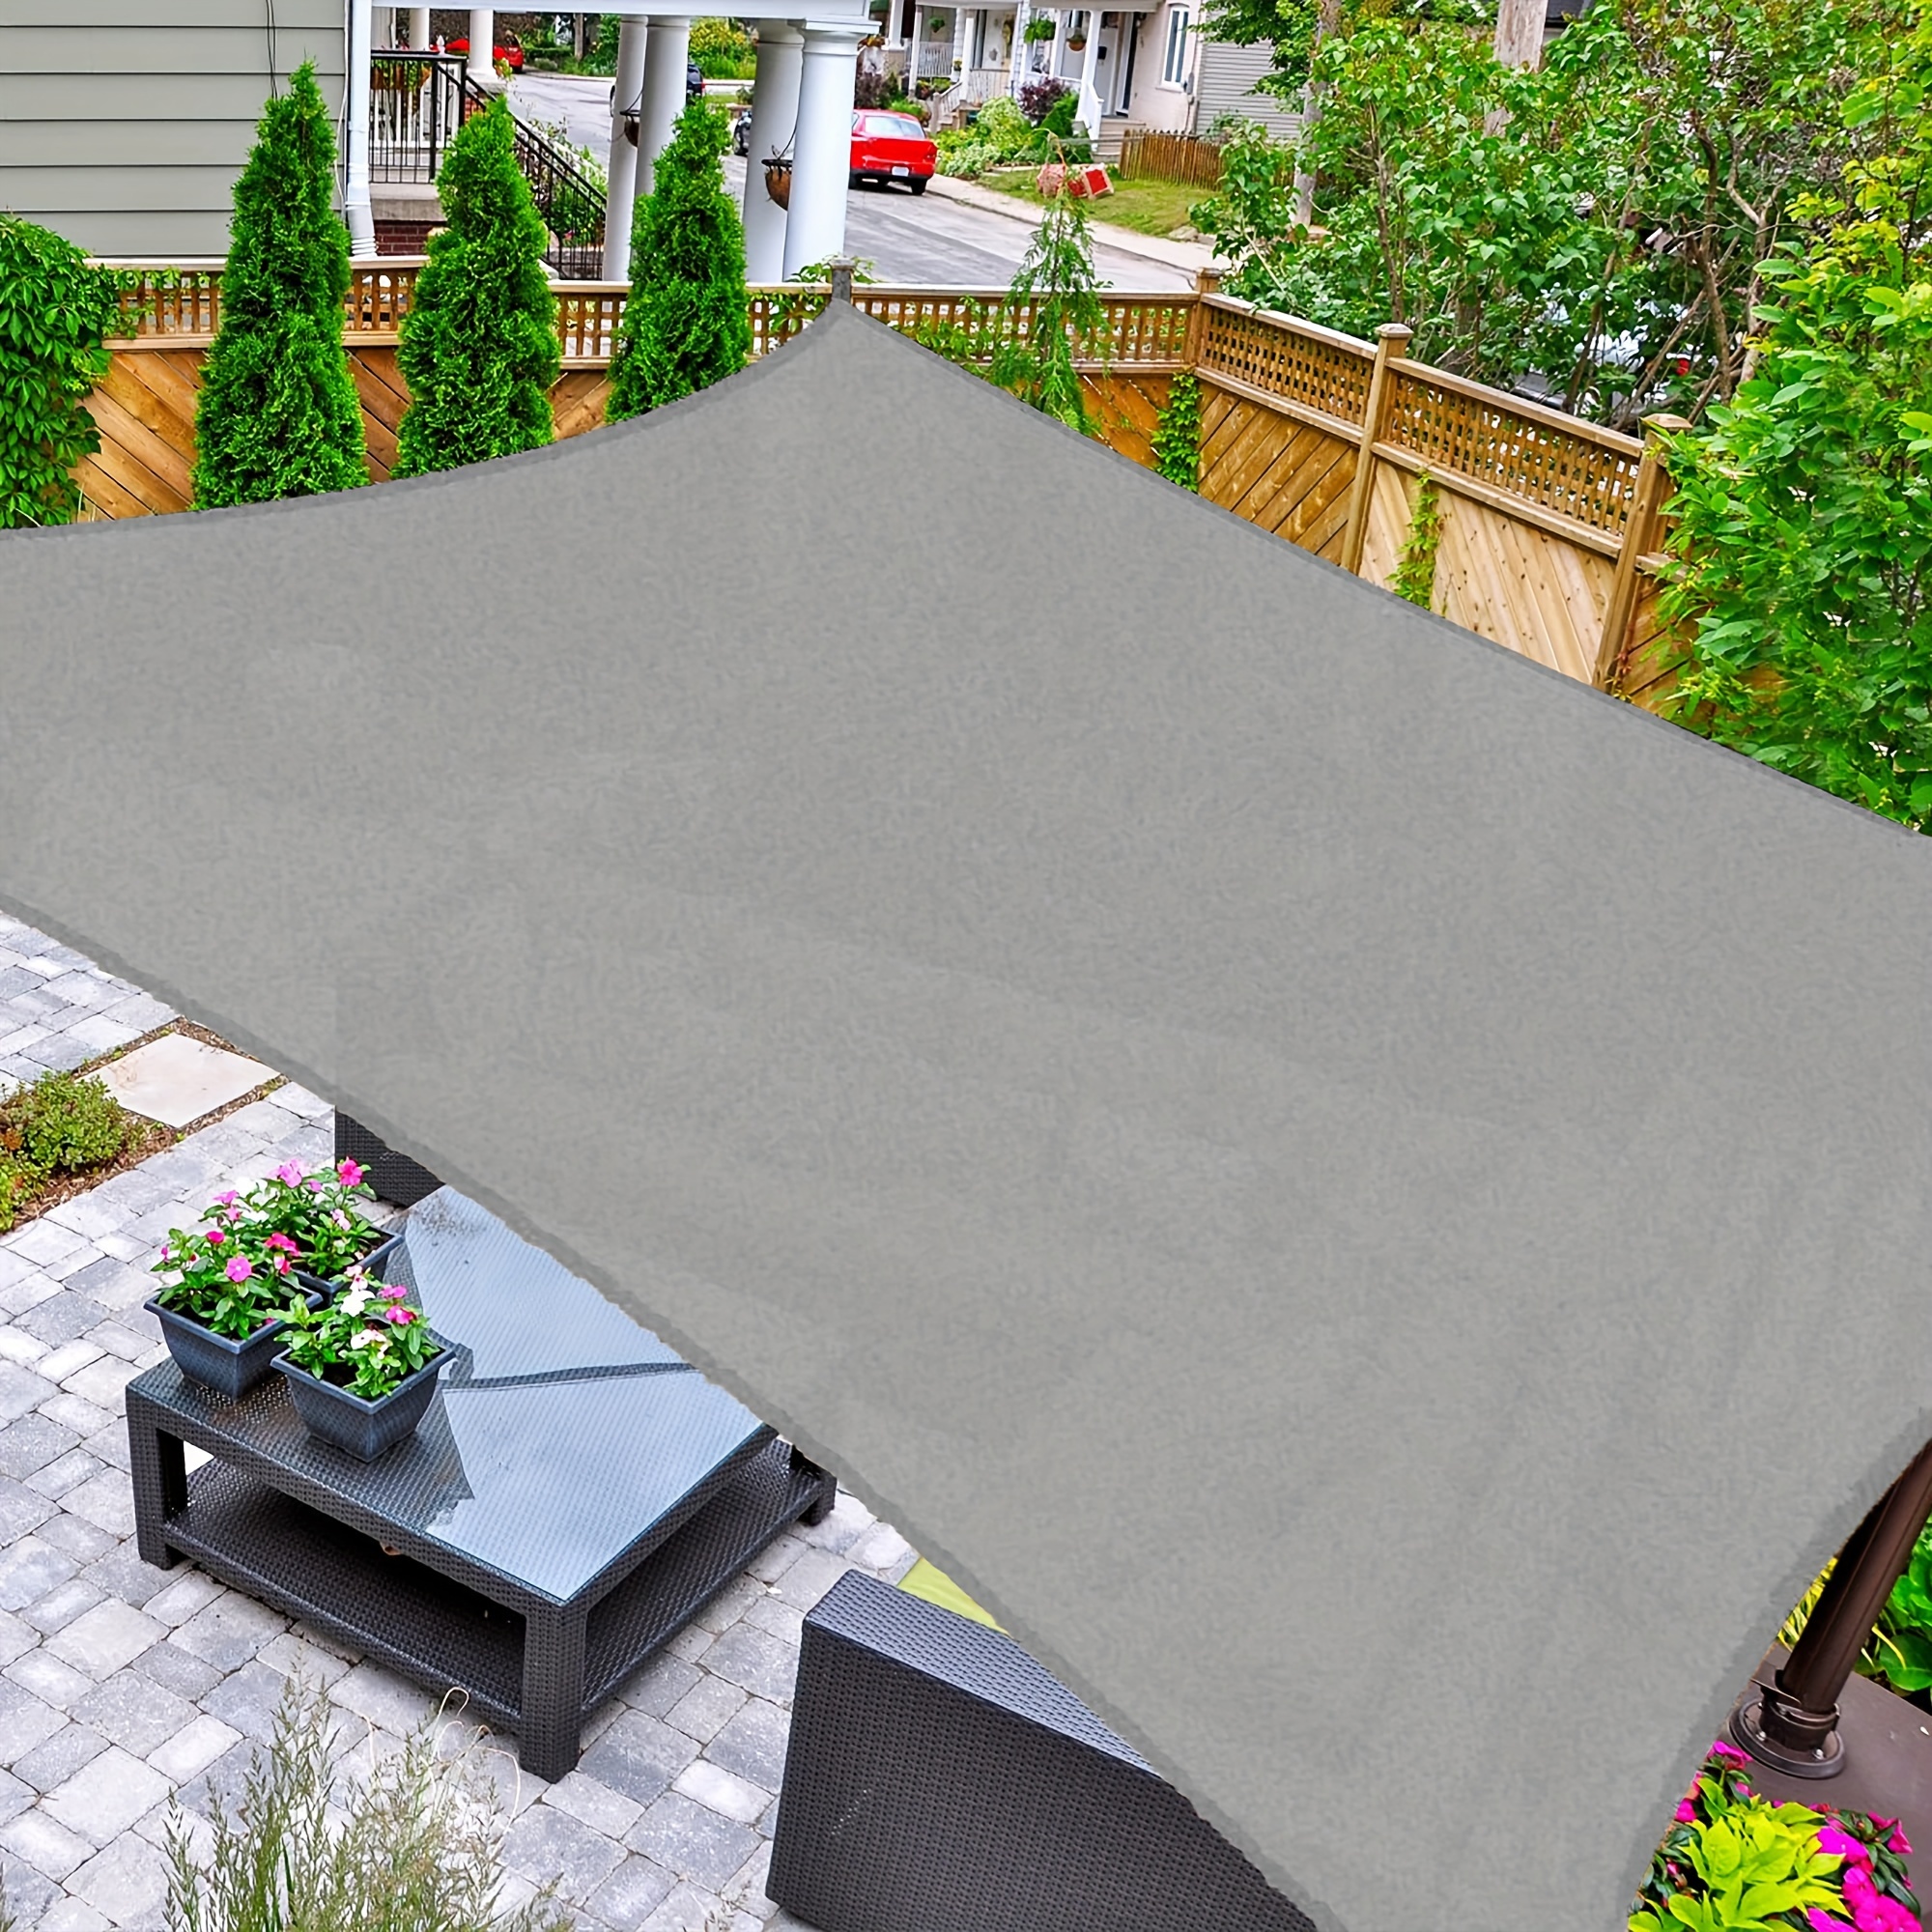 

Sun Shade Rectangle, 10' X 13' Uv Block Canopy For Patio Backyard Lawn Garden Outdoor Activities